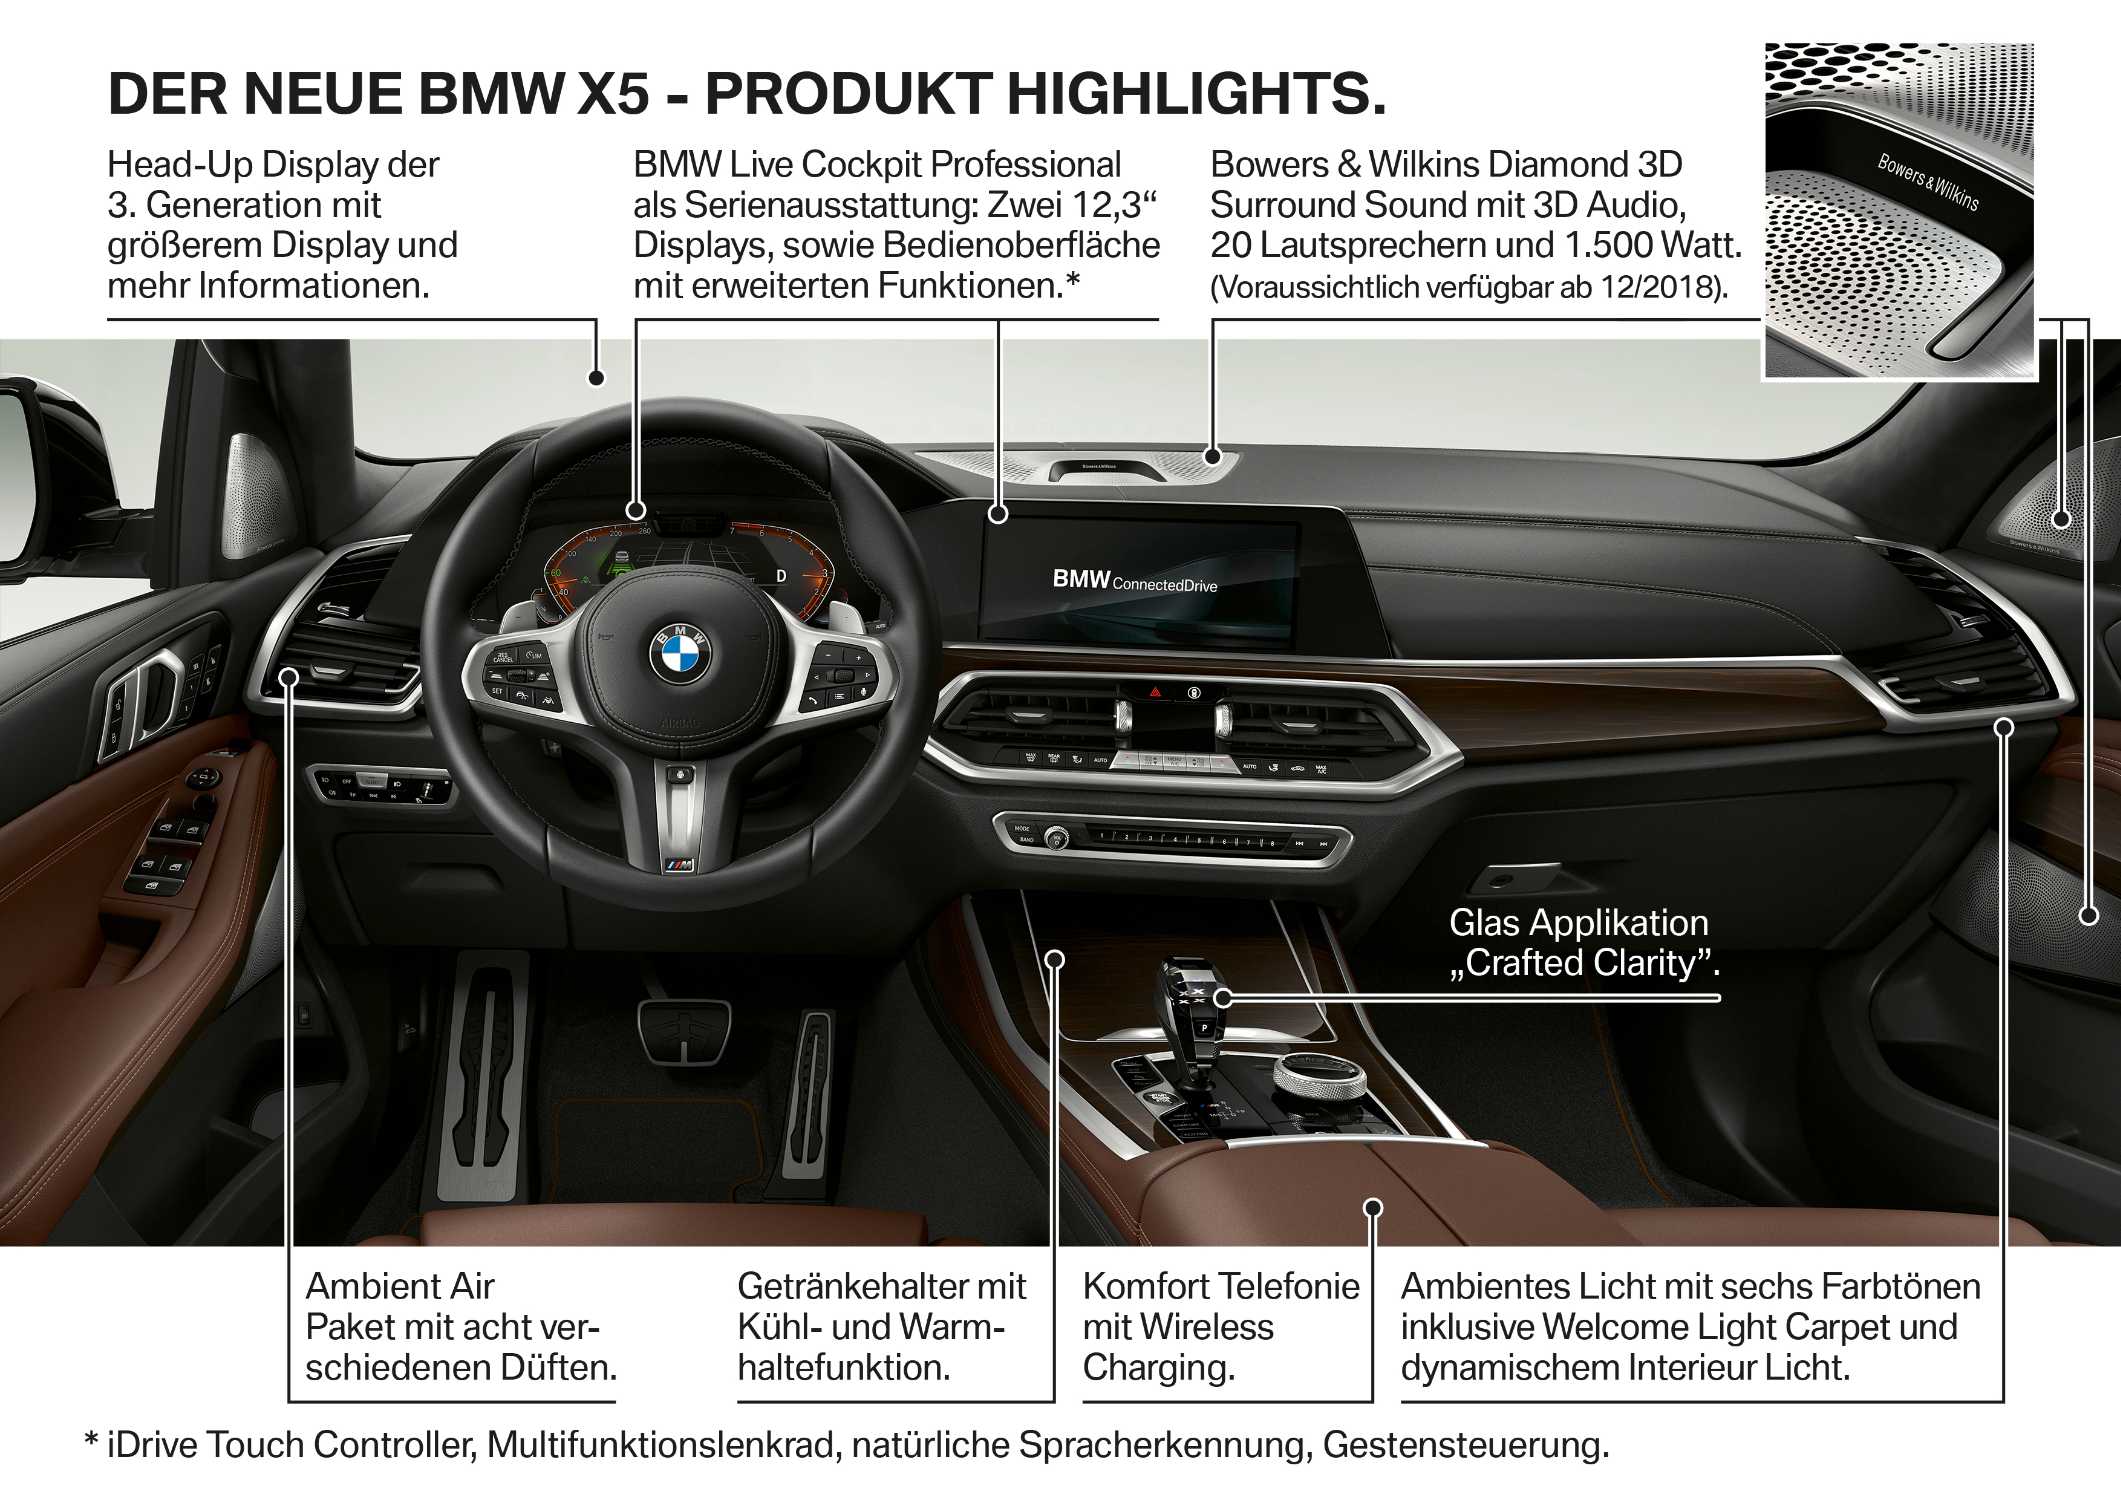 Der neue BMW X5 - Produkt Highlights (06/2018).